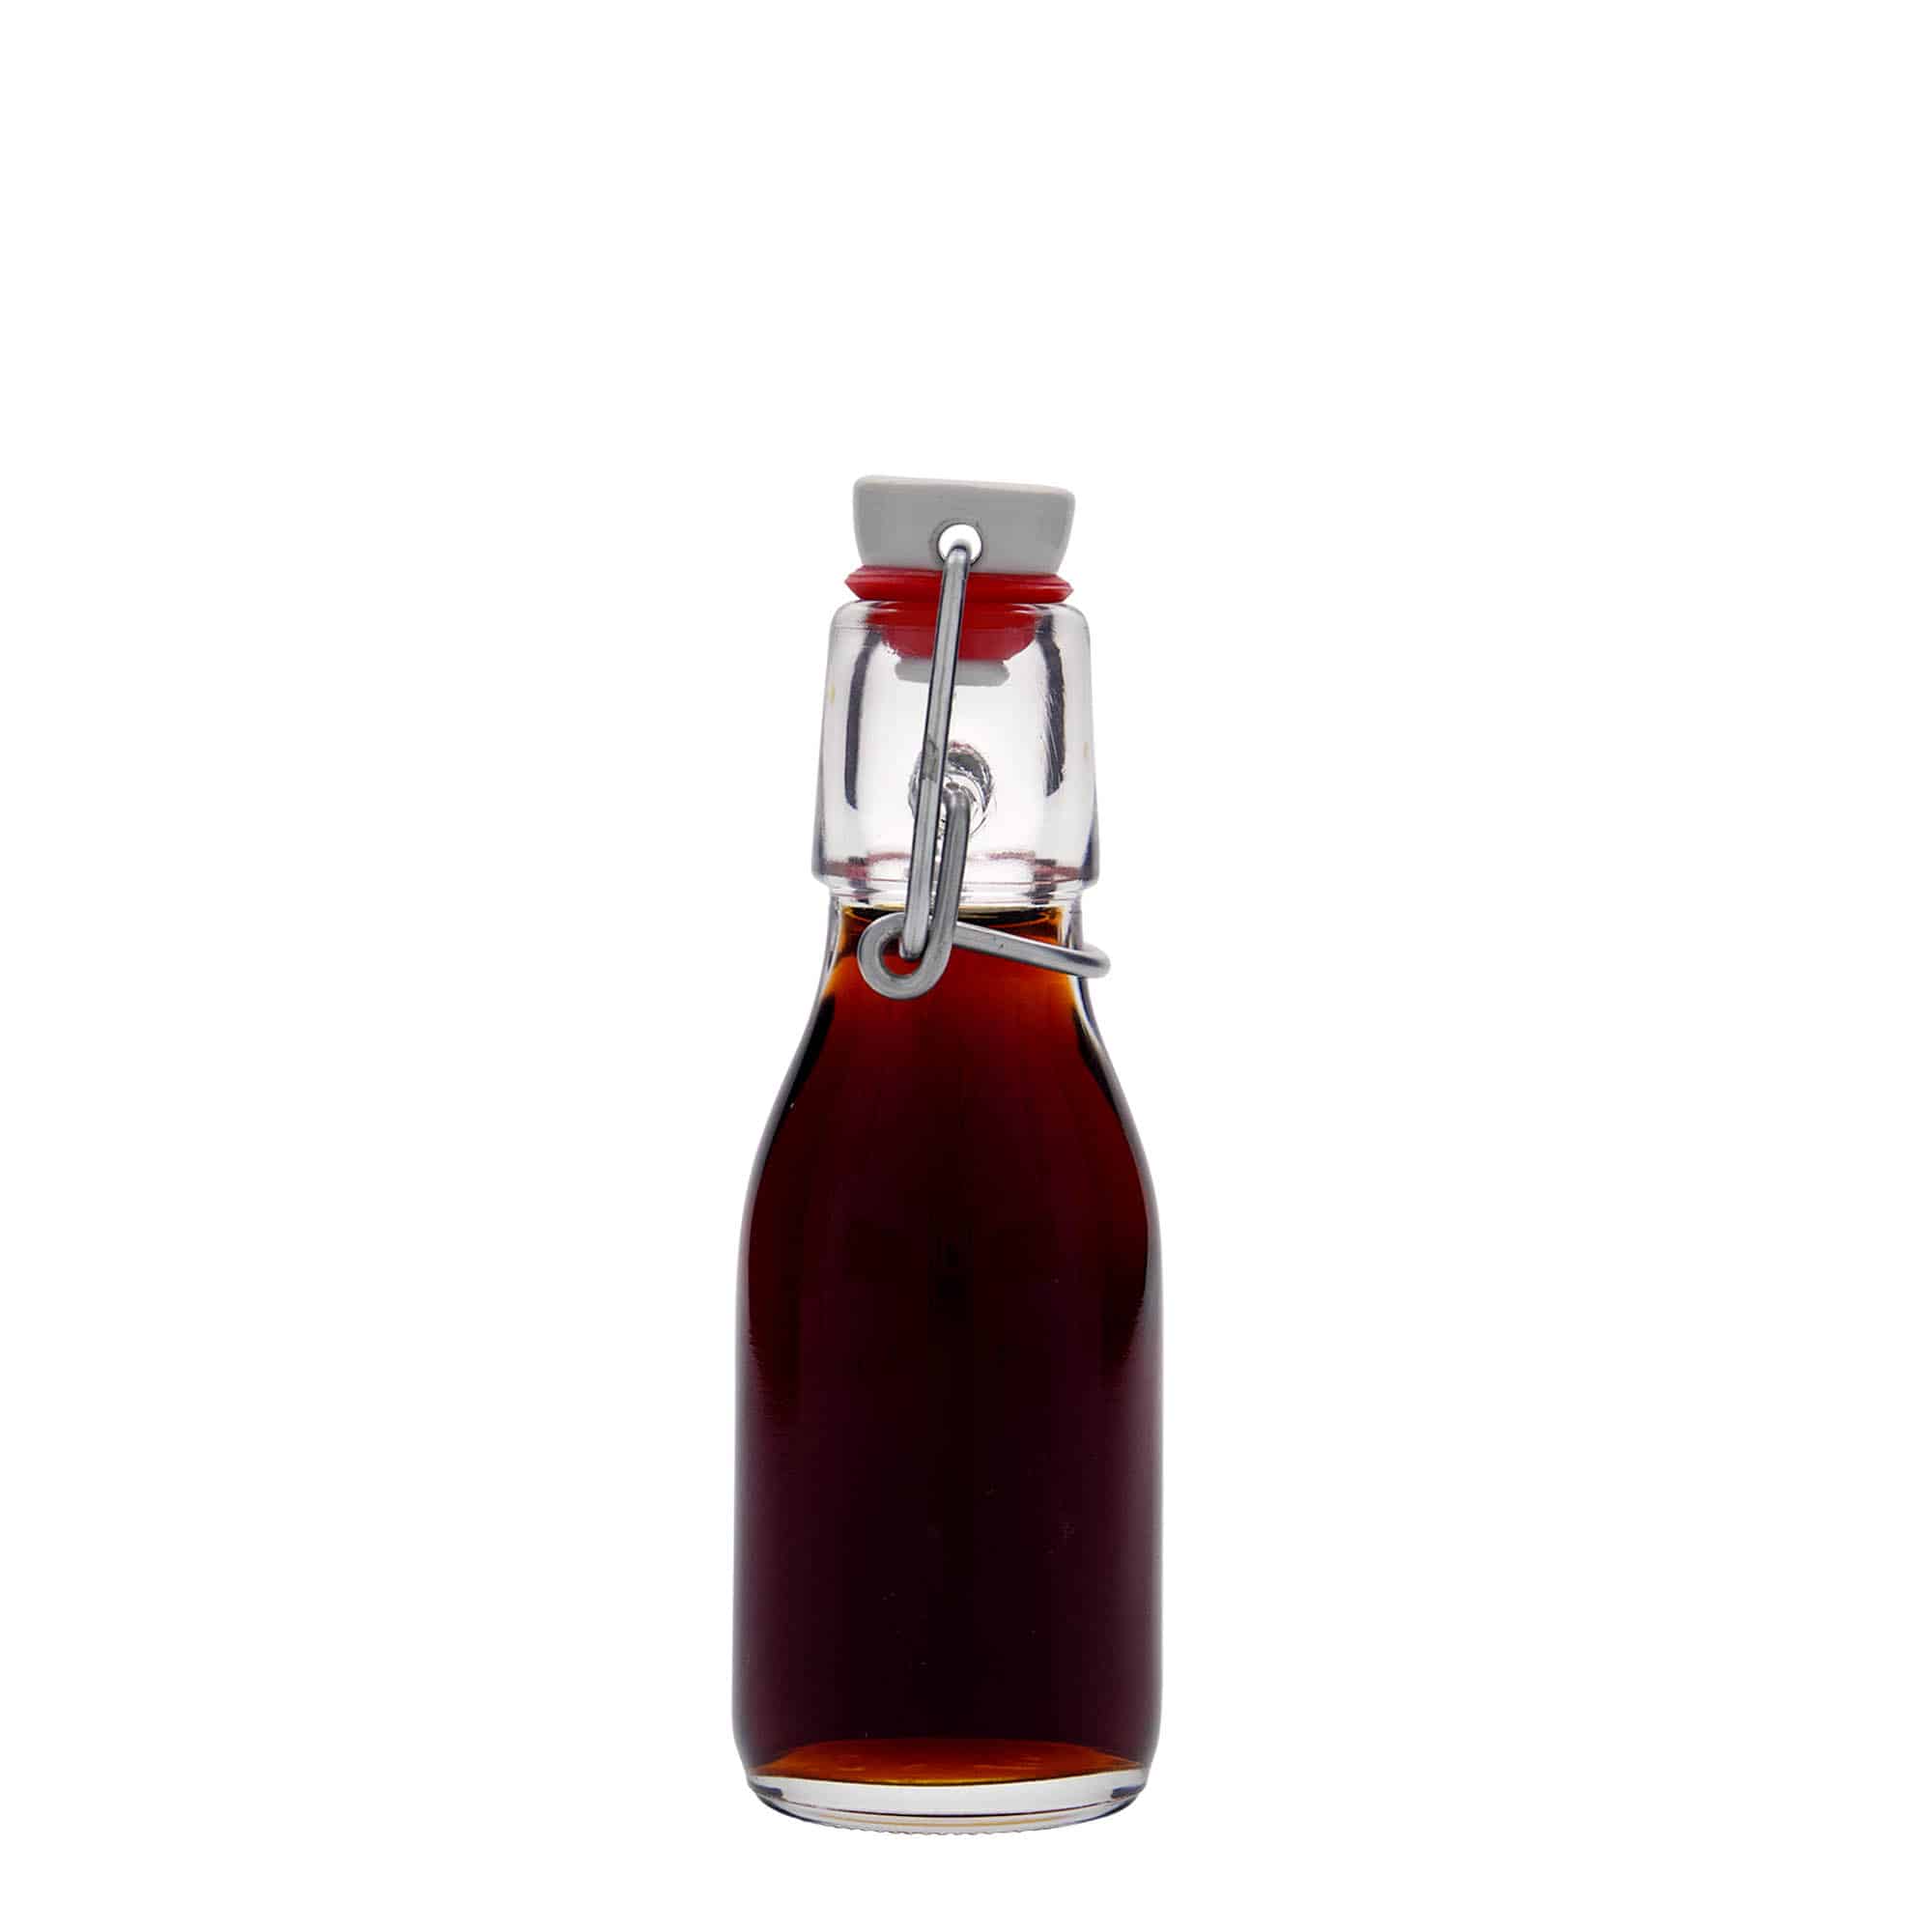 100 ml glass bottle 'Paul', closure: swing top